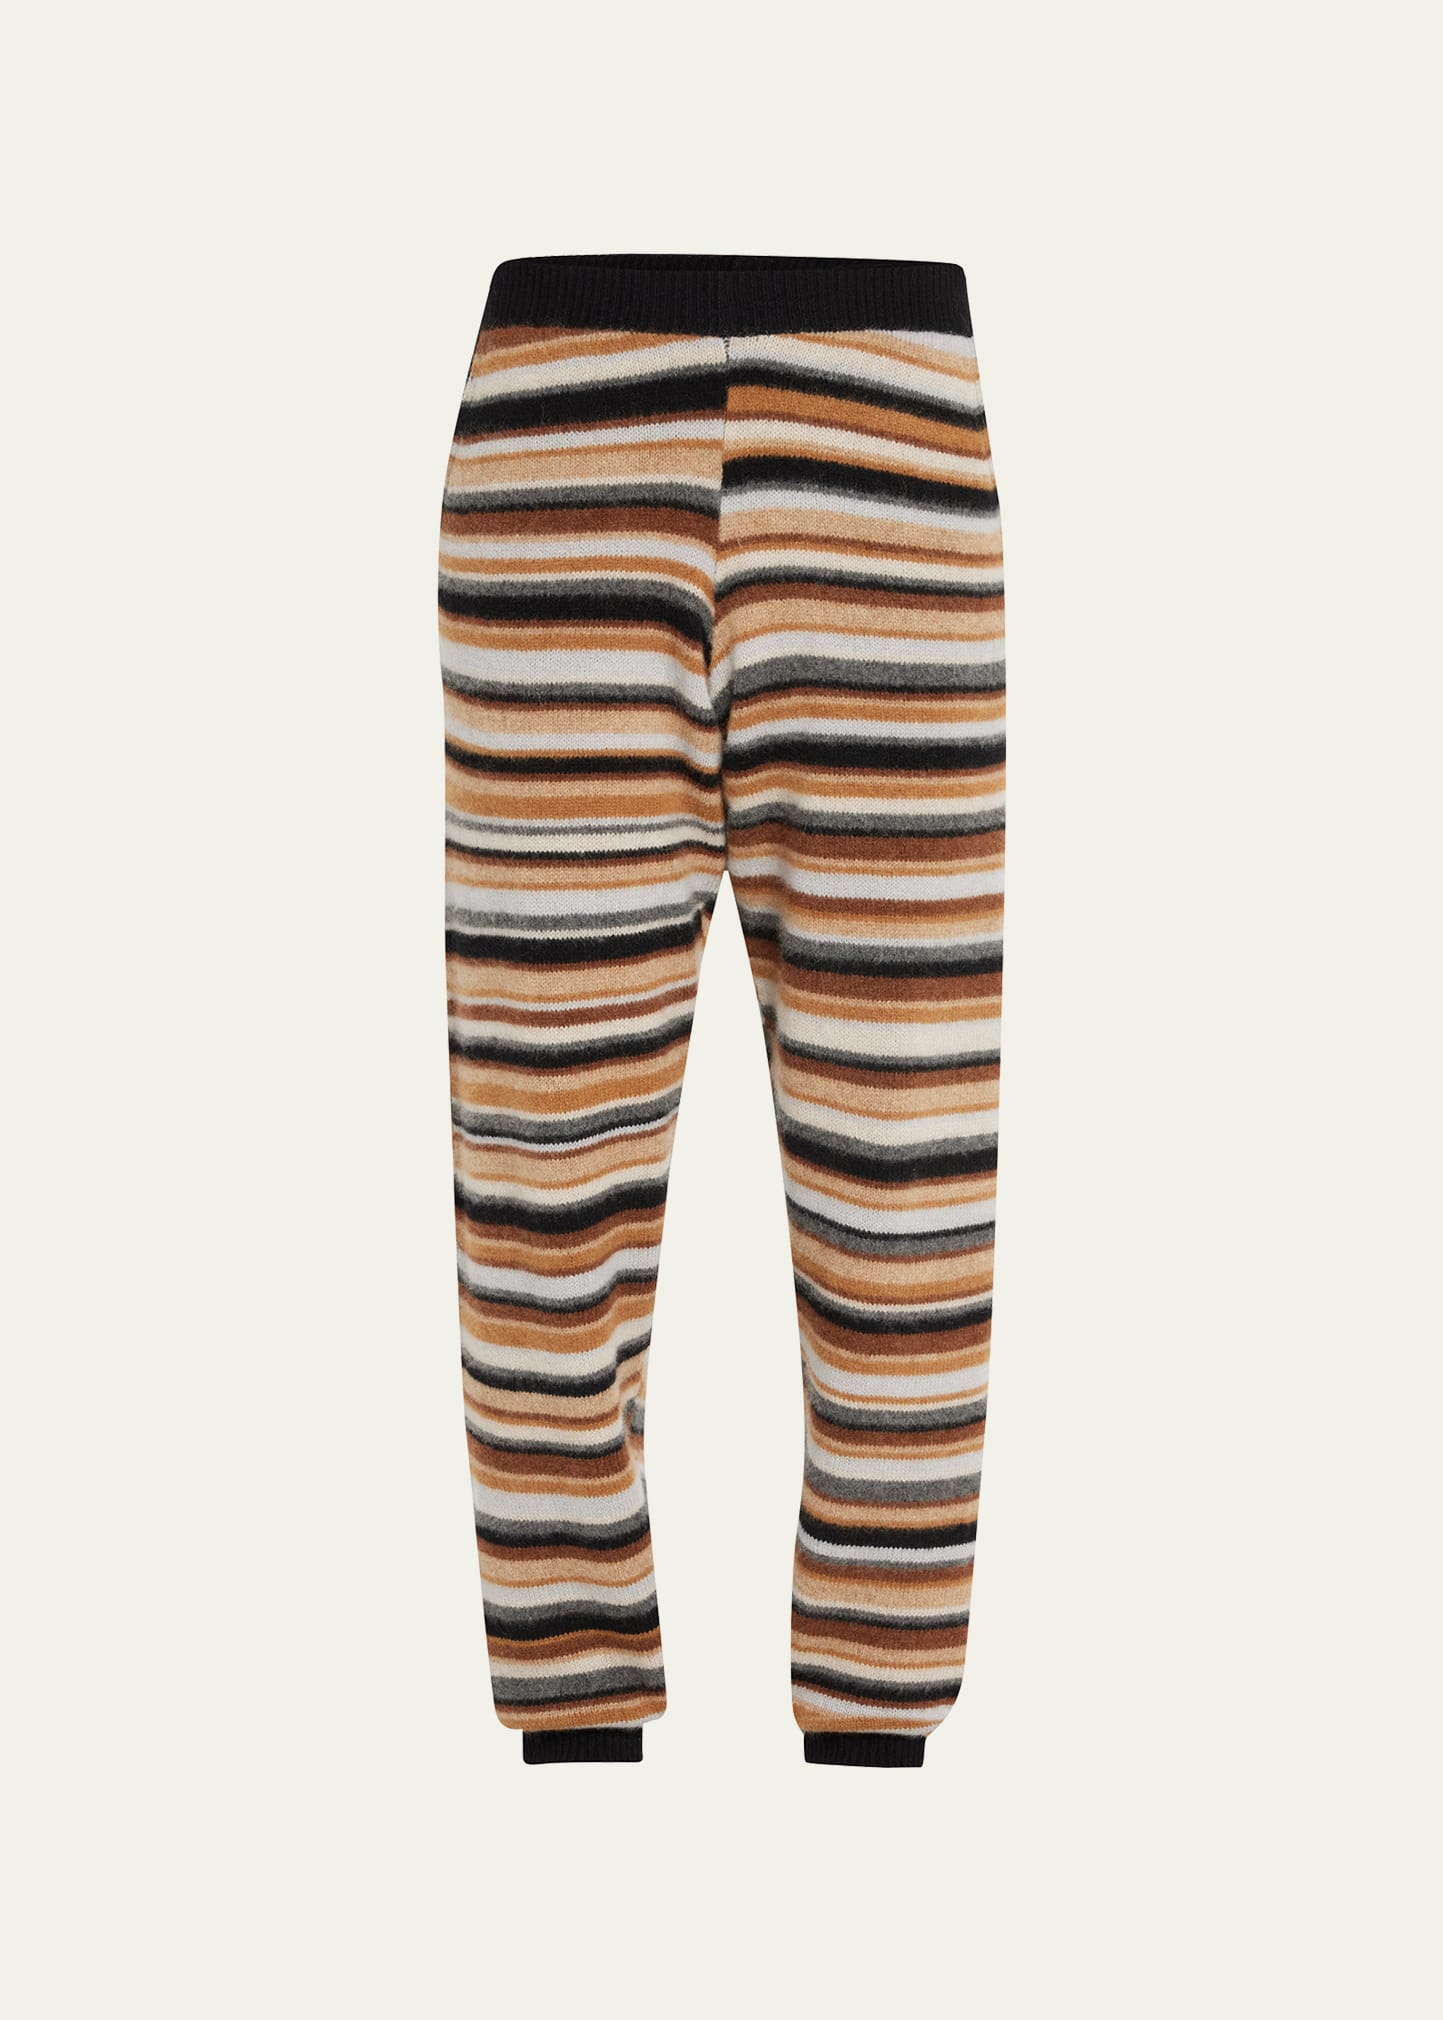 Men's Striped Cashmere Knit Sweatpants